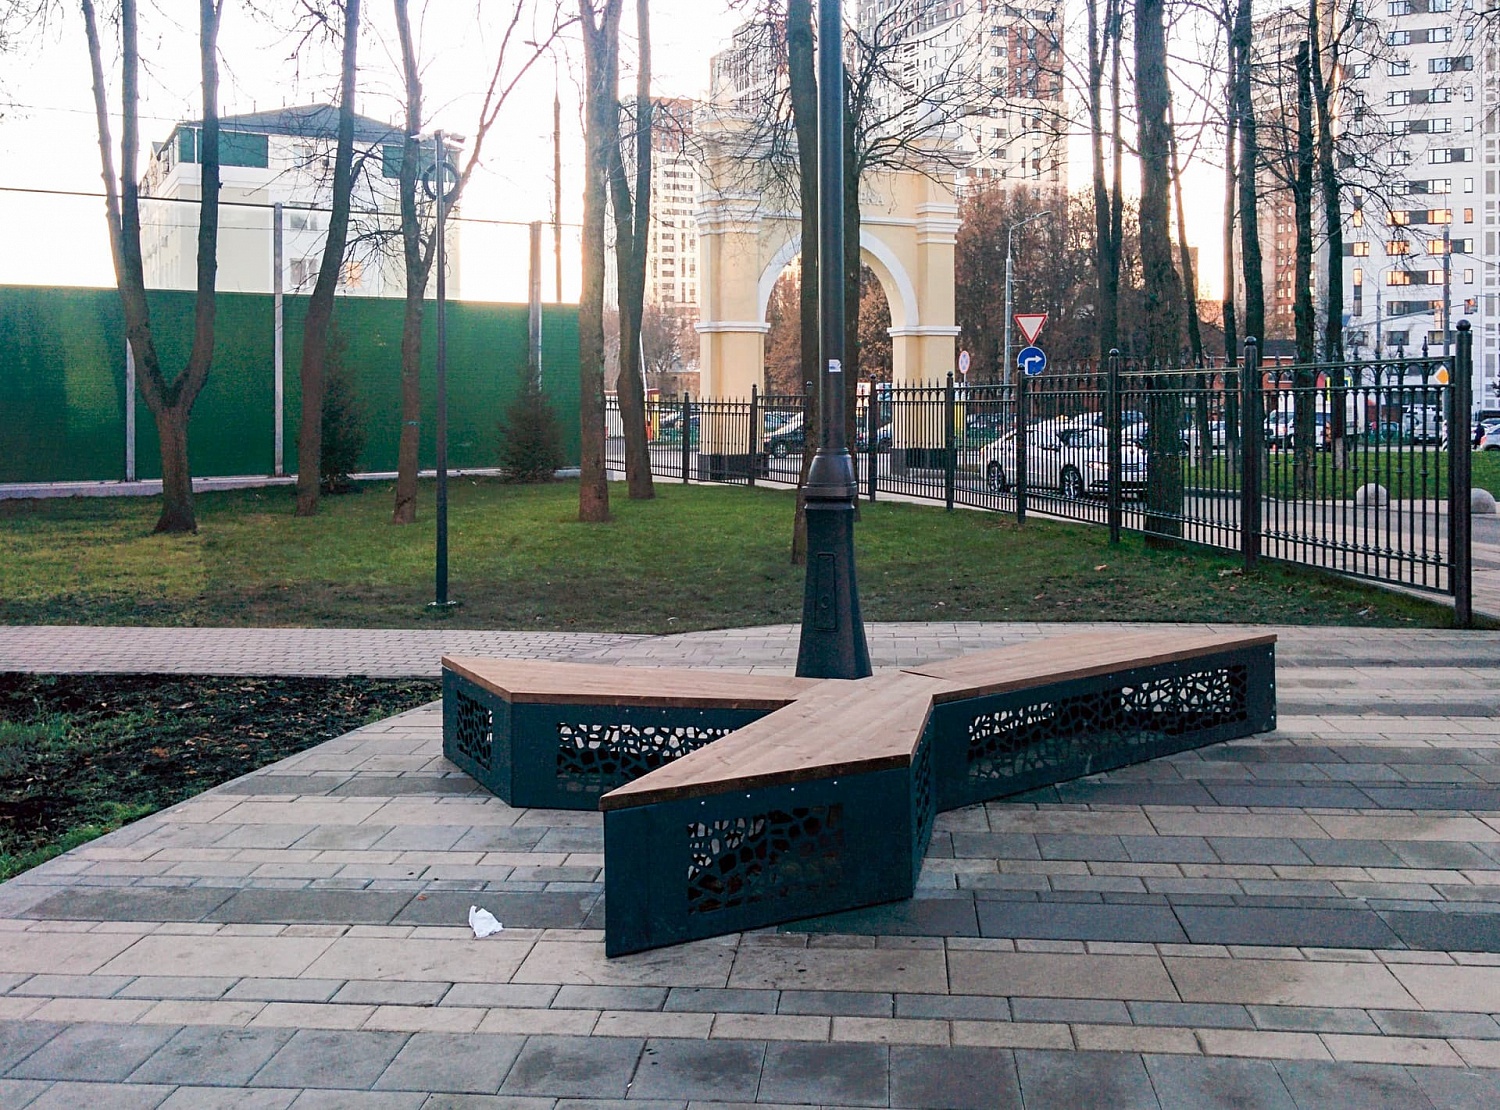 Липовый парк, поселок Коммунарка, Московская область, 2016 г.